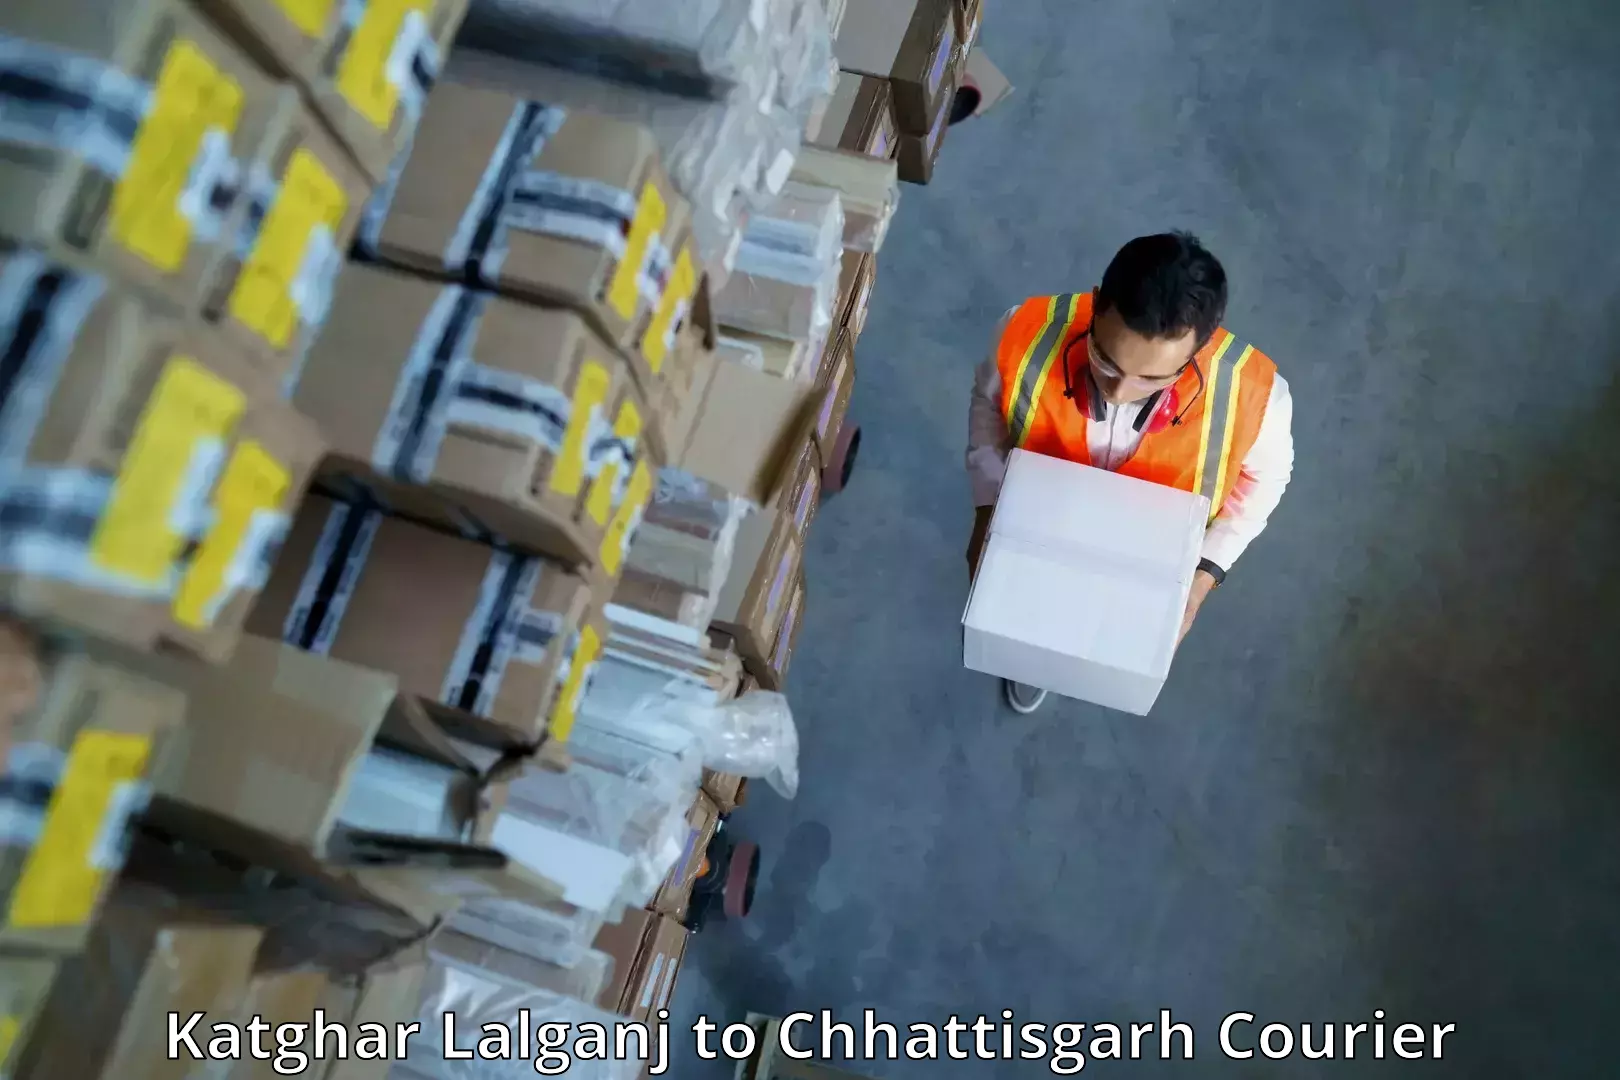 Courier service comparison Katghar Lalganj to Patan Durg